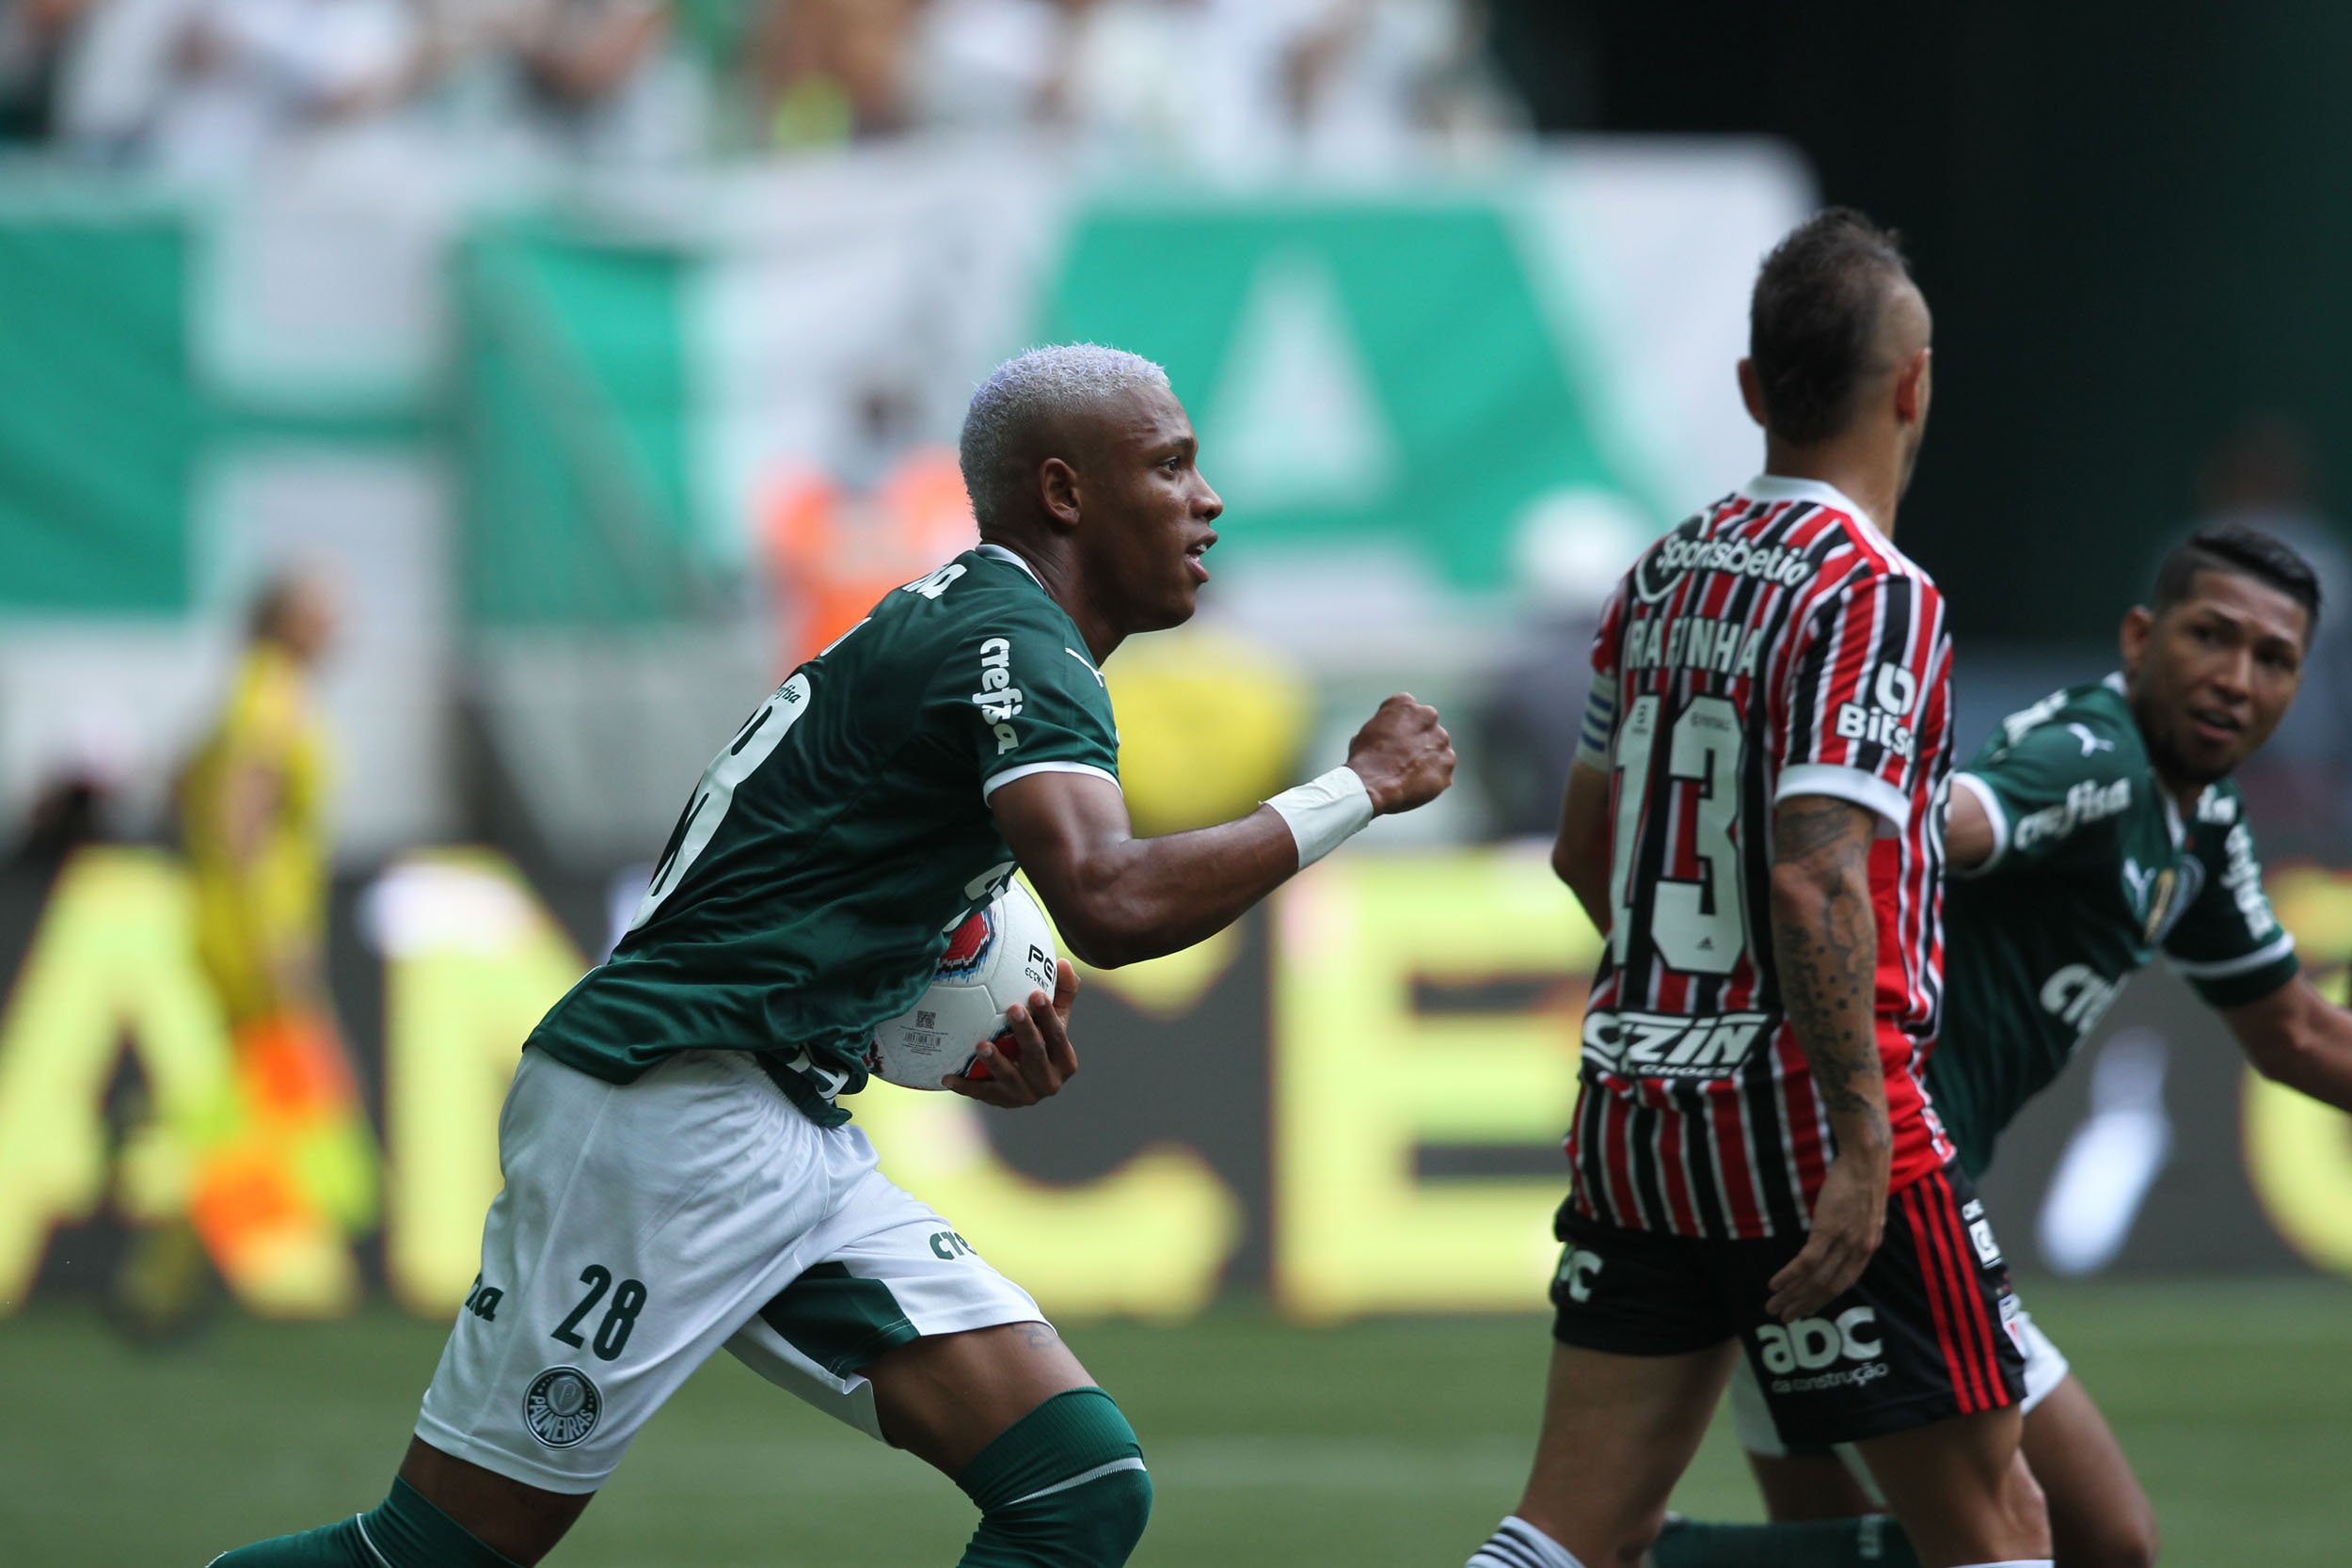 Palmeiras x São Paulo - AO VIVO - 03/04/2022 - Final do Paulistão